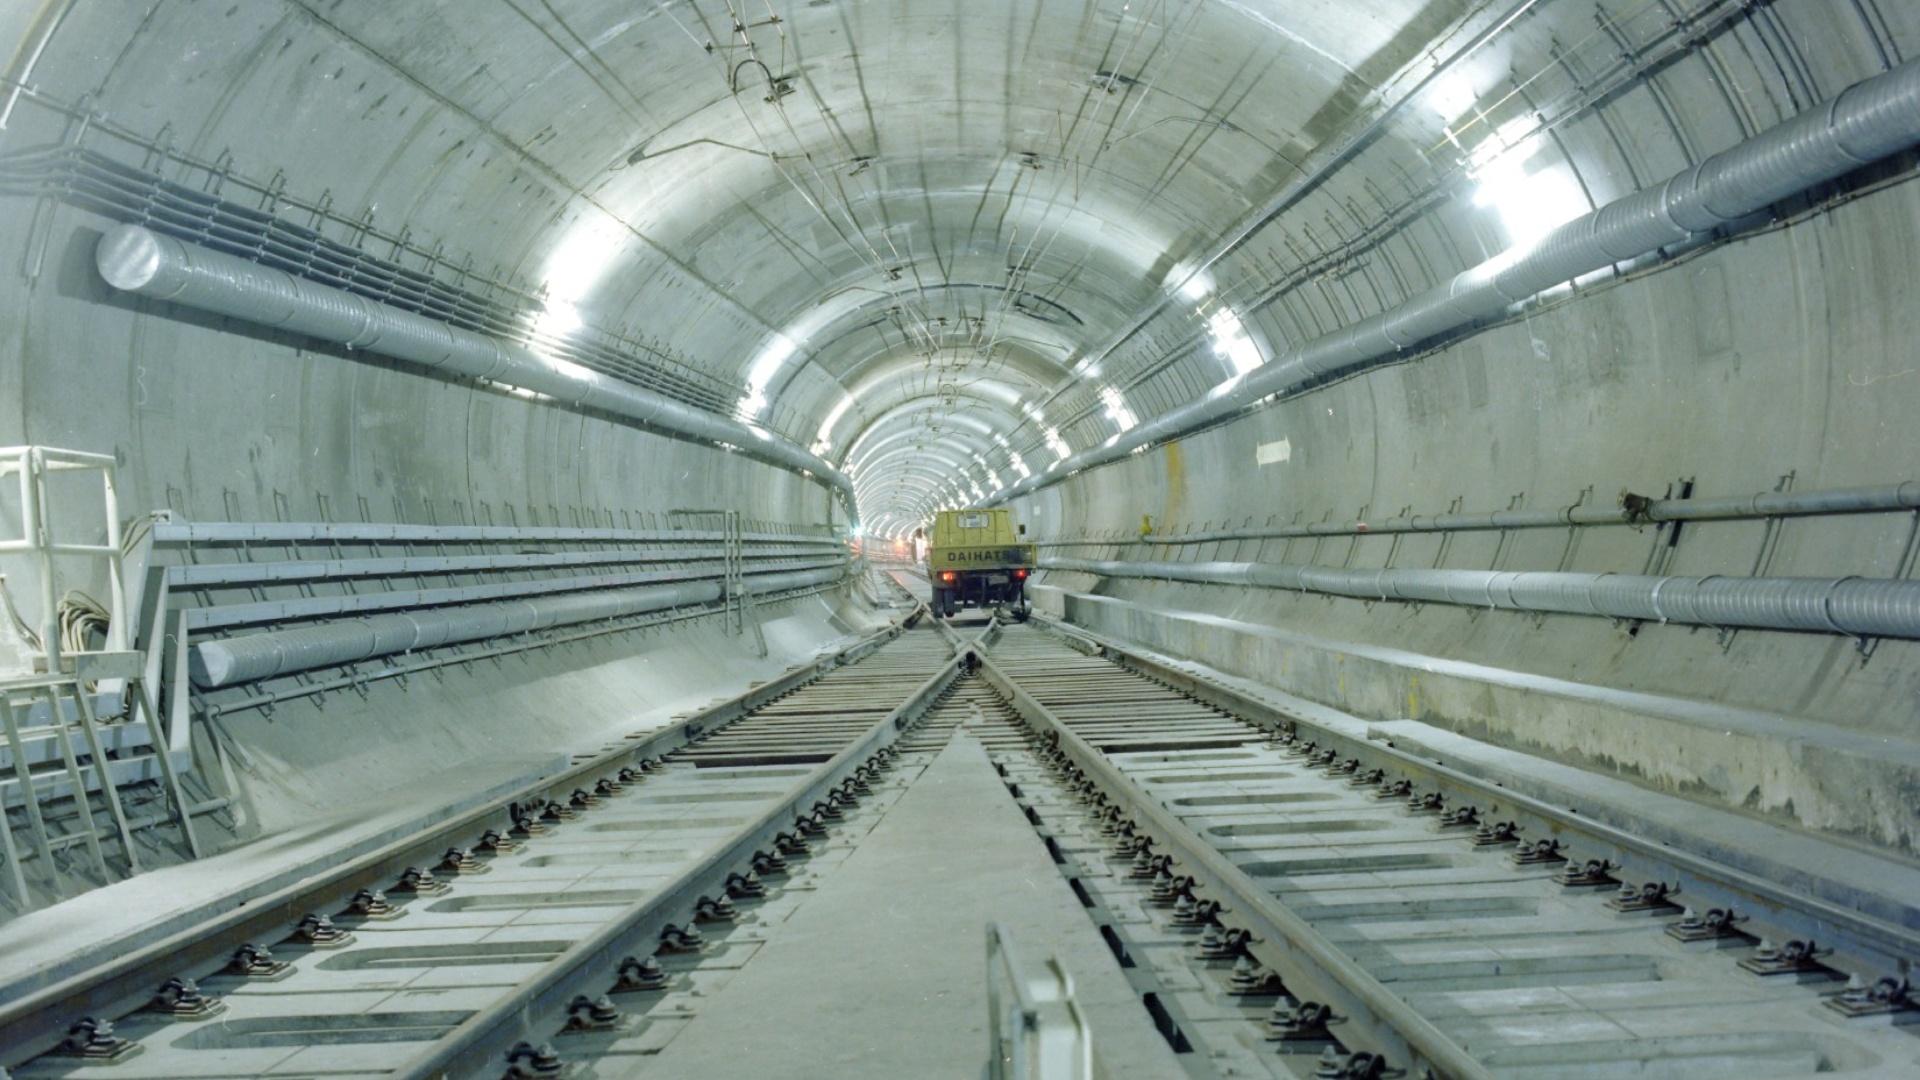 Flagstaff-Parliament-Jolimont tunnel, Melbourne Underground Rail Loop, Australia | Webuild